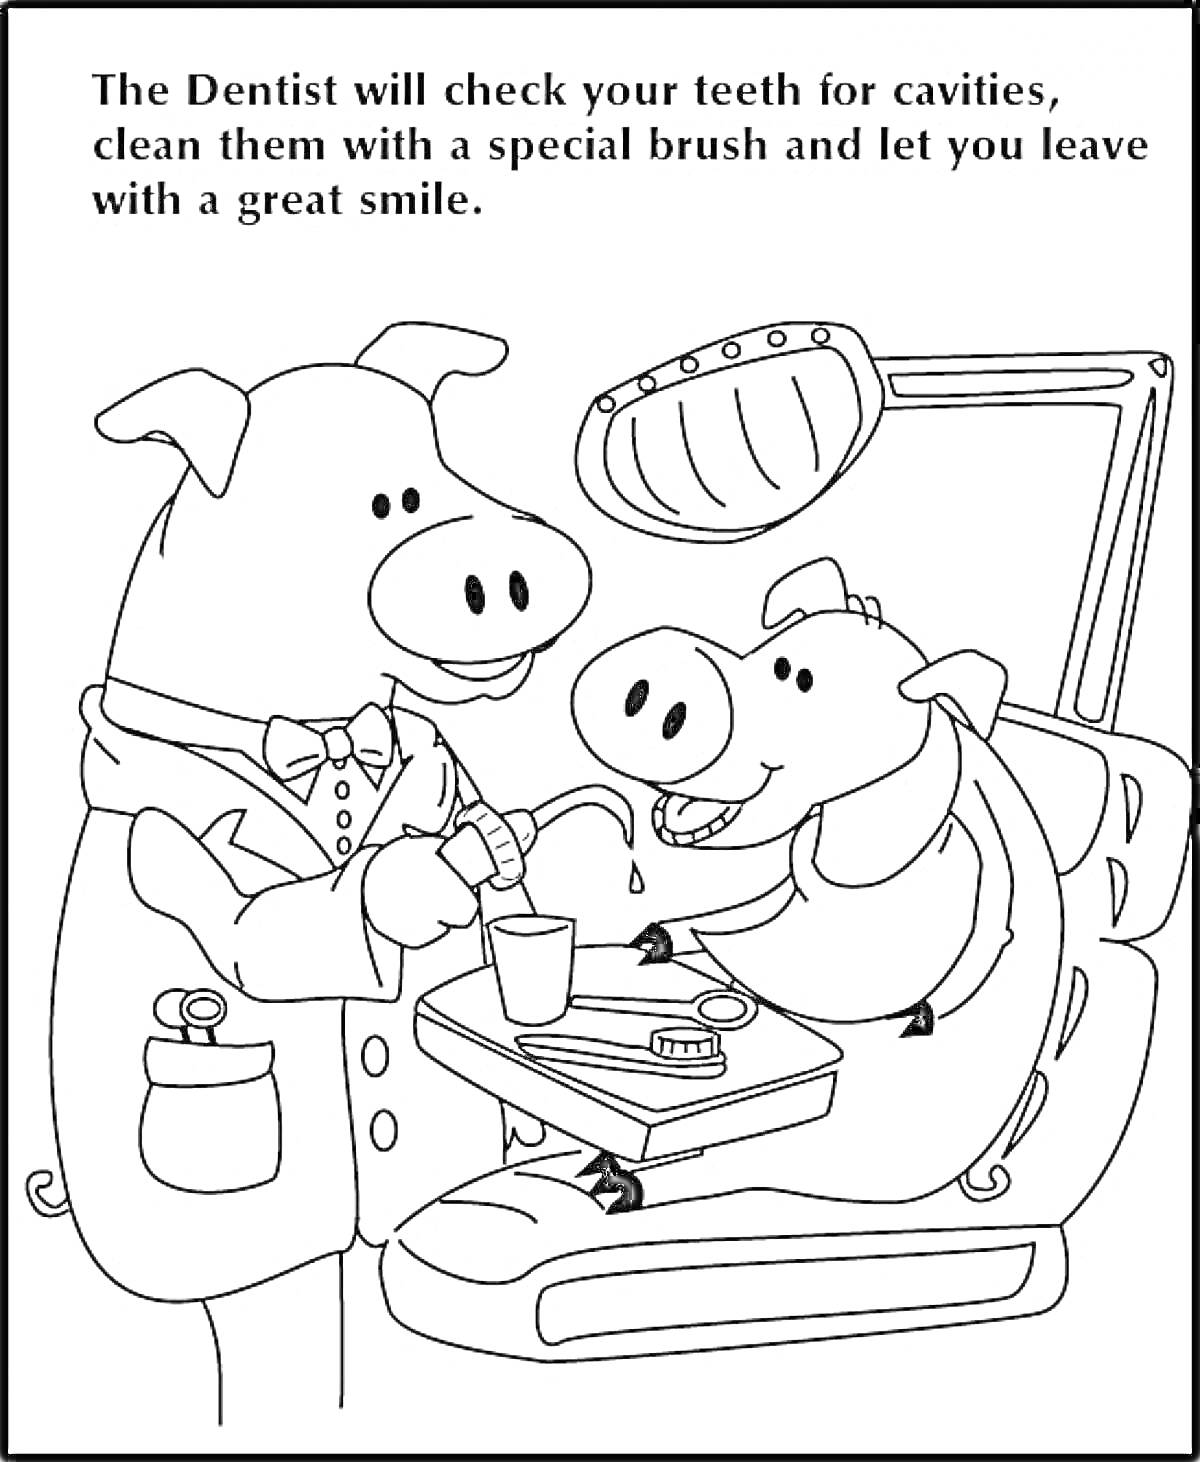 Раскраска Поросёнок-стоматолог осматривает зубы пациента-поросёнка, стоматологическое кресло, аксессуары для стоматологии